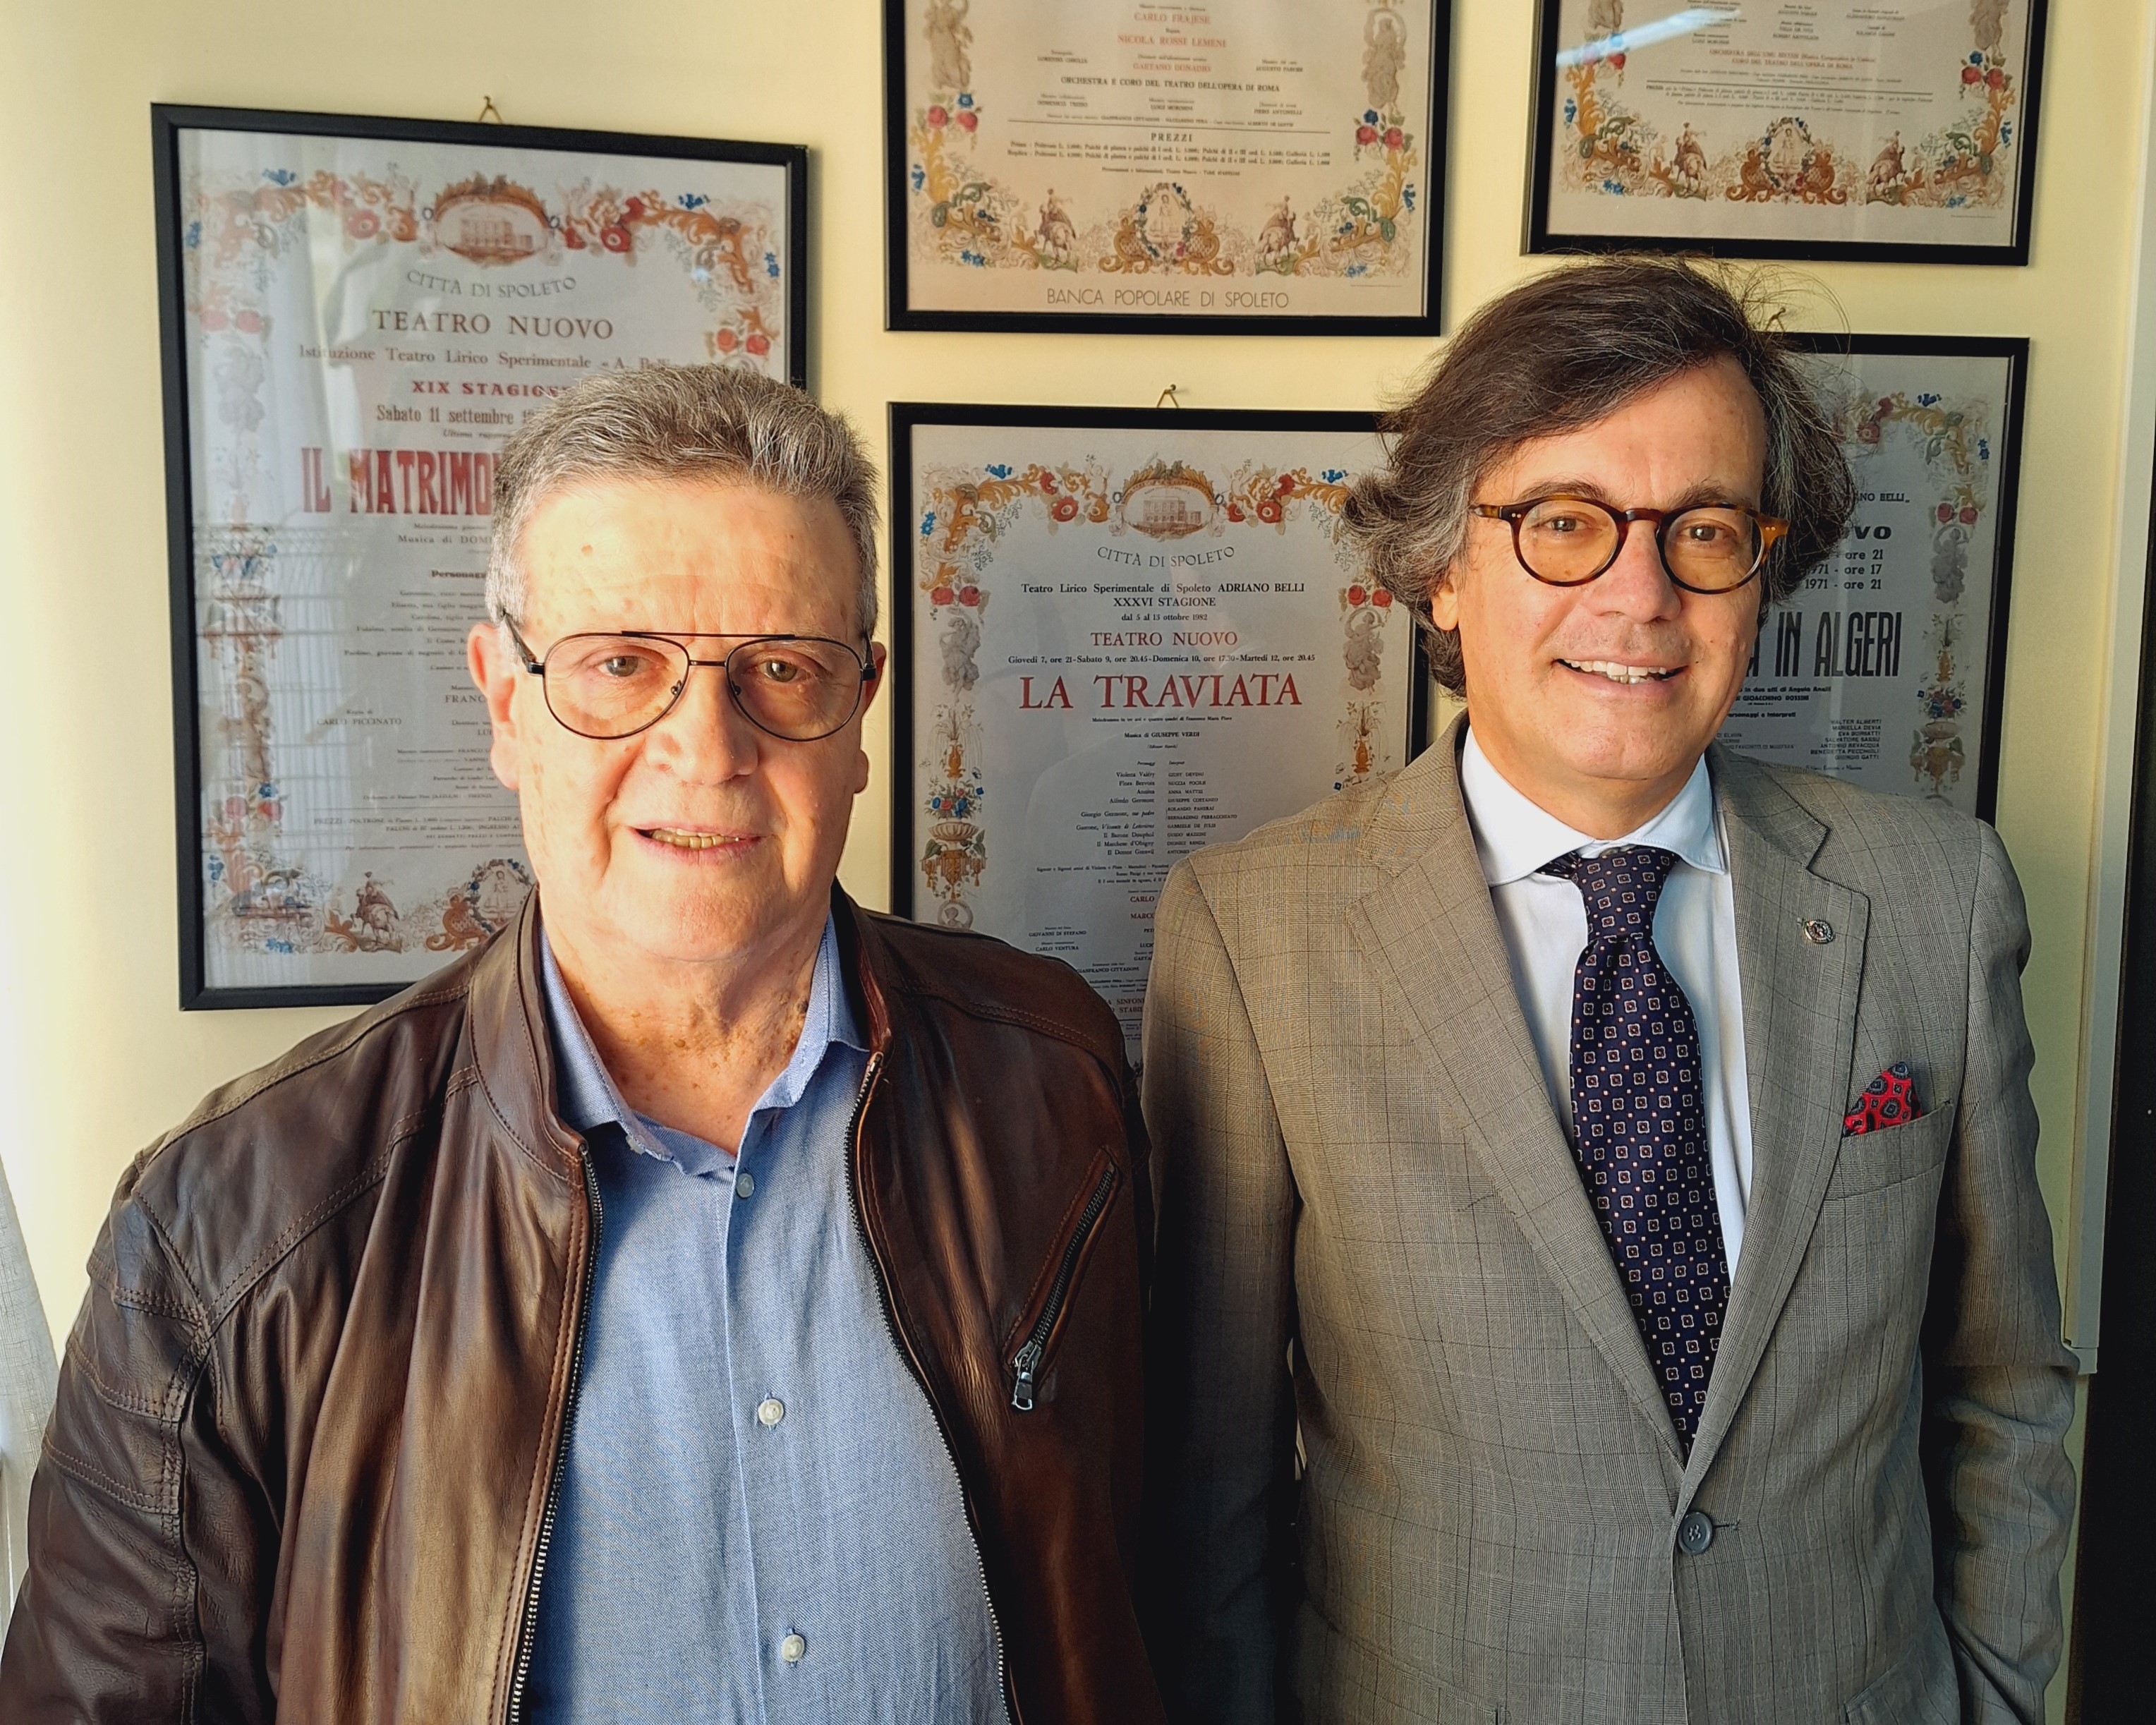 Roberto Calai e Luciano Belli eletti dal Consiglio direttivo Presidente e Vicepresidente del Teatro Lirico Sperimentale “A. Belli” di Spoleto